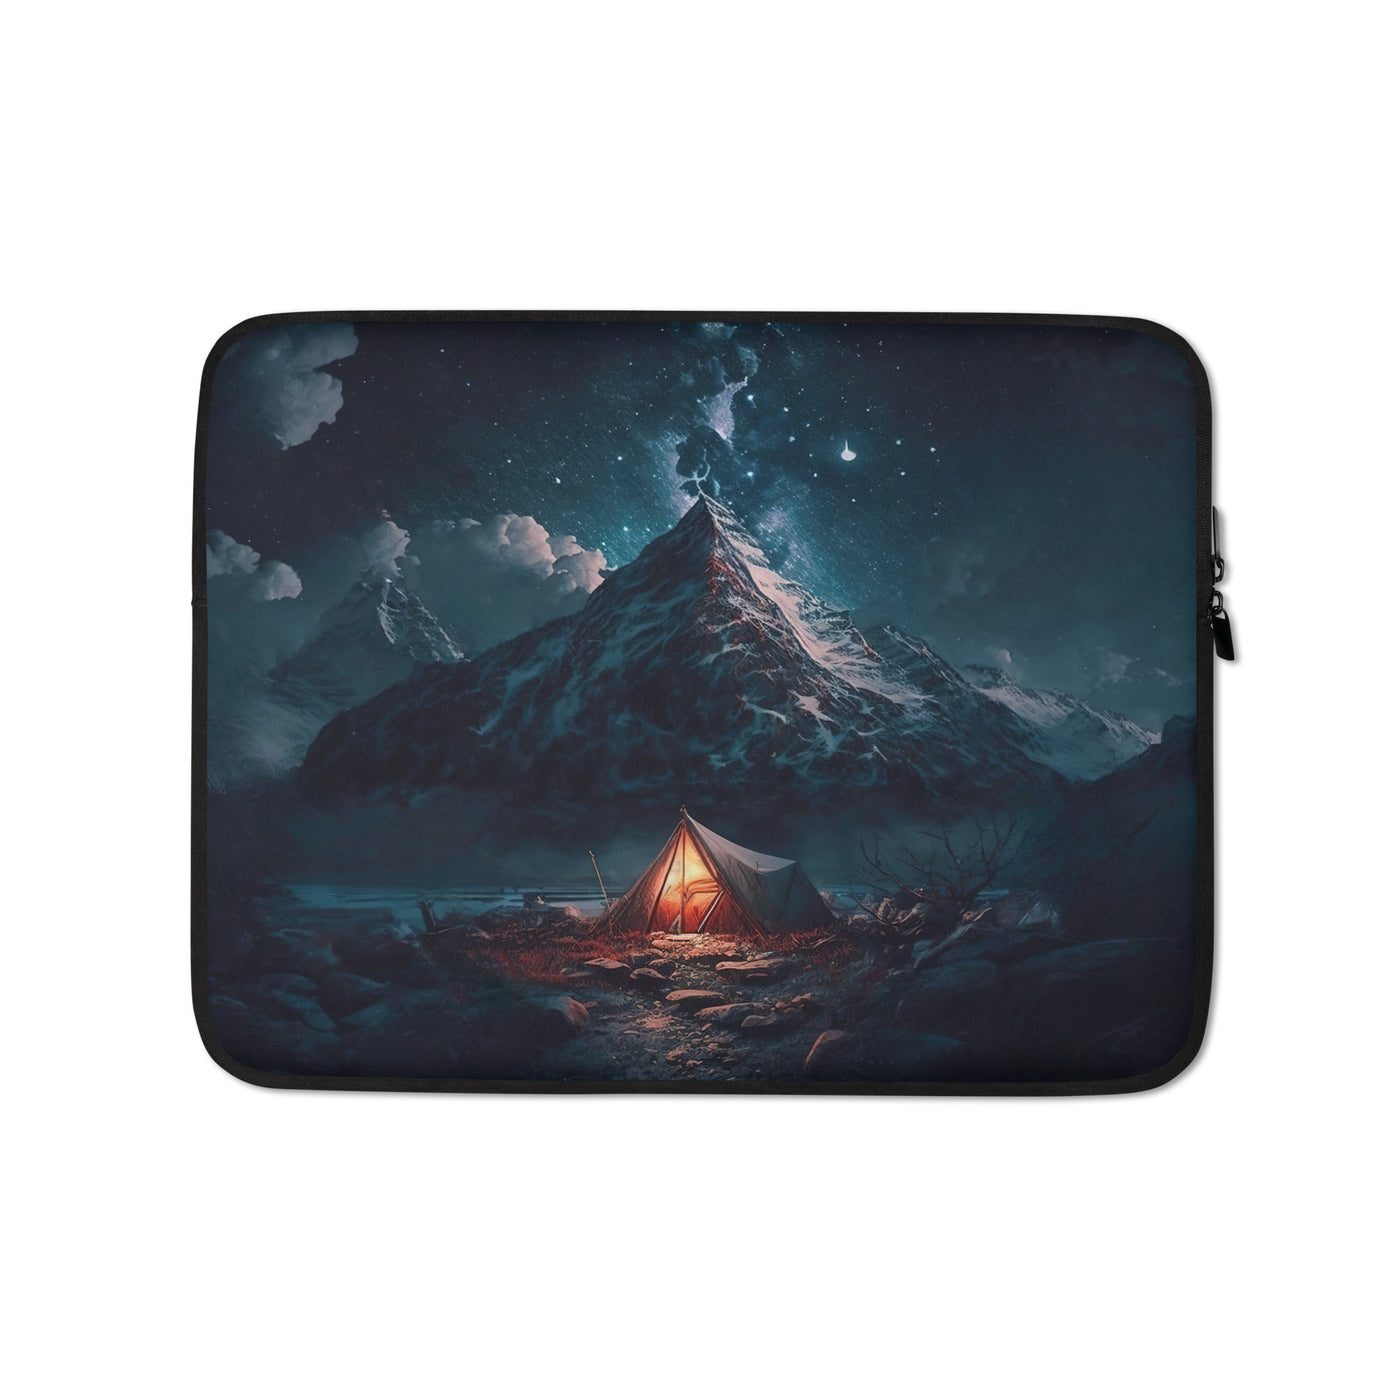 Zelt und Berg in der Nacht - Sterne am Himmel - Landschaftsmalerei - Laptophülle camping xxx 13″